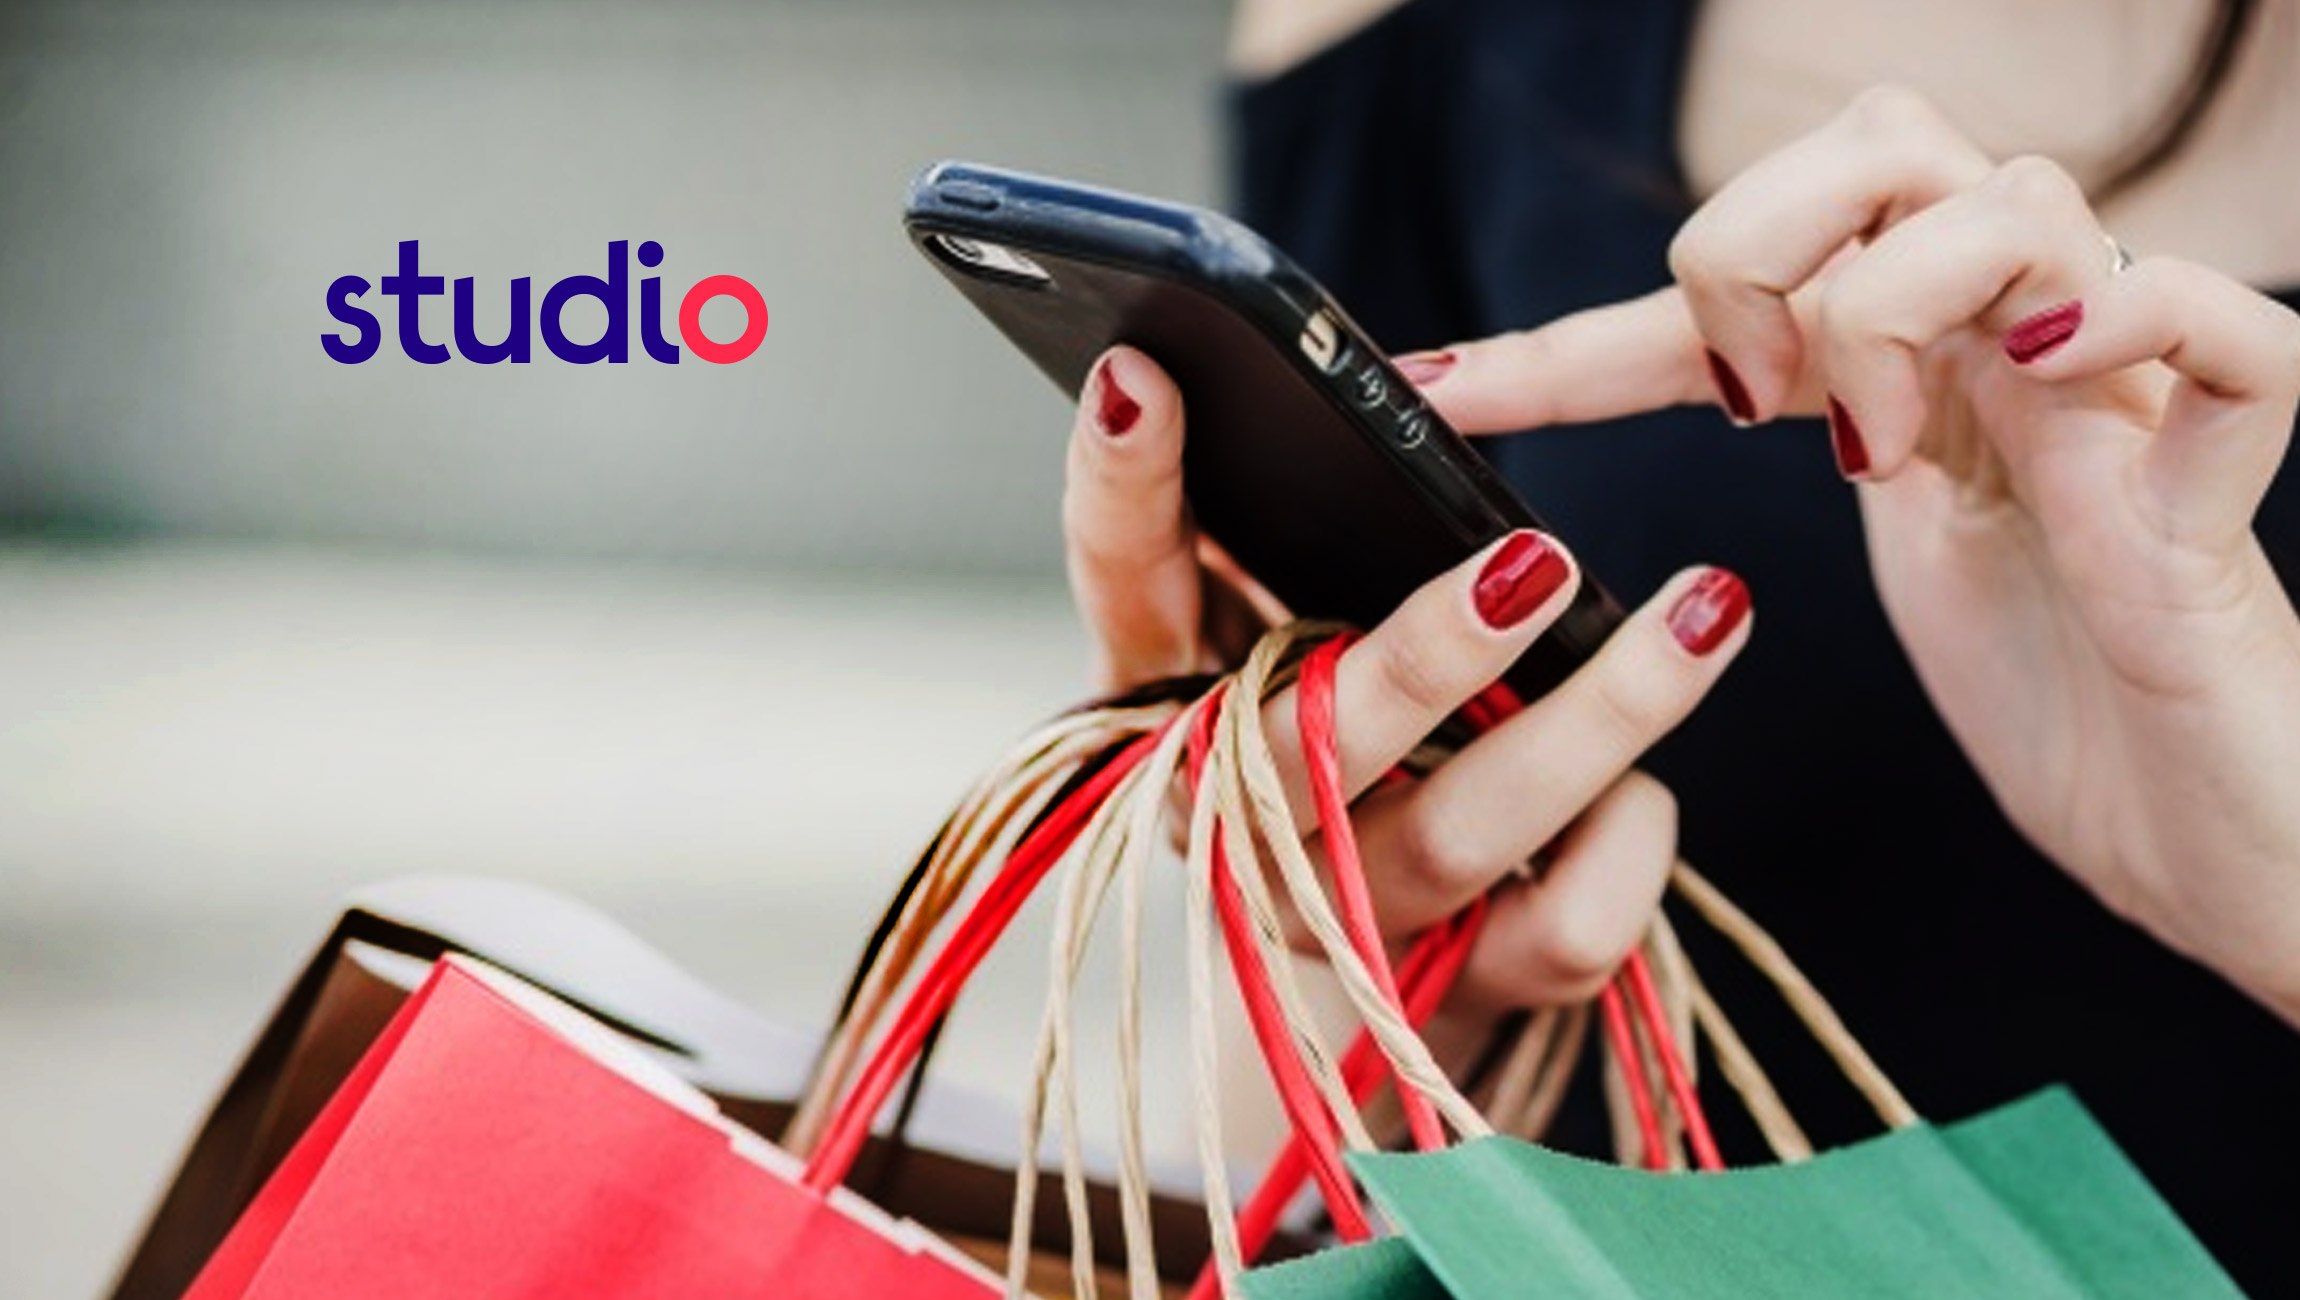 Studio Retail przedstawia aplikację, aby rozszerzyć możliwości zakupów mobilnych